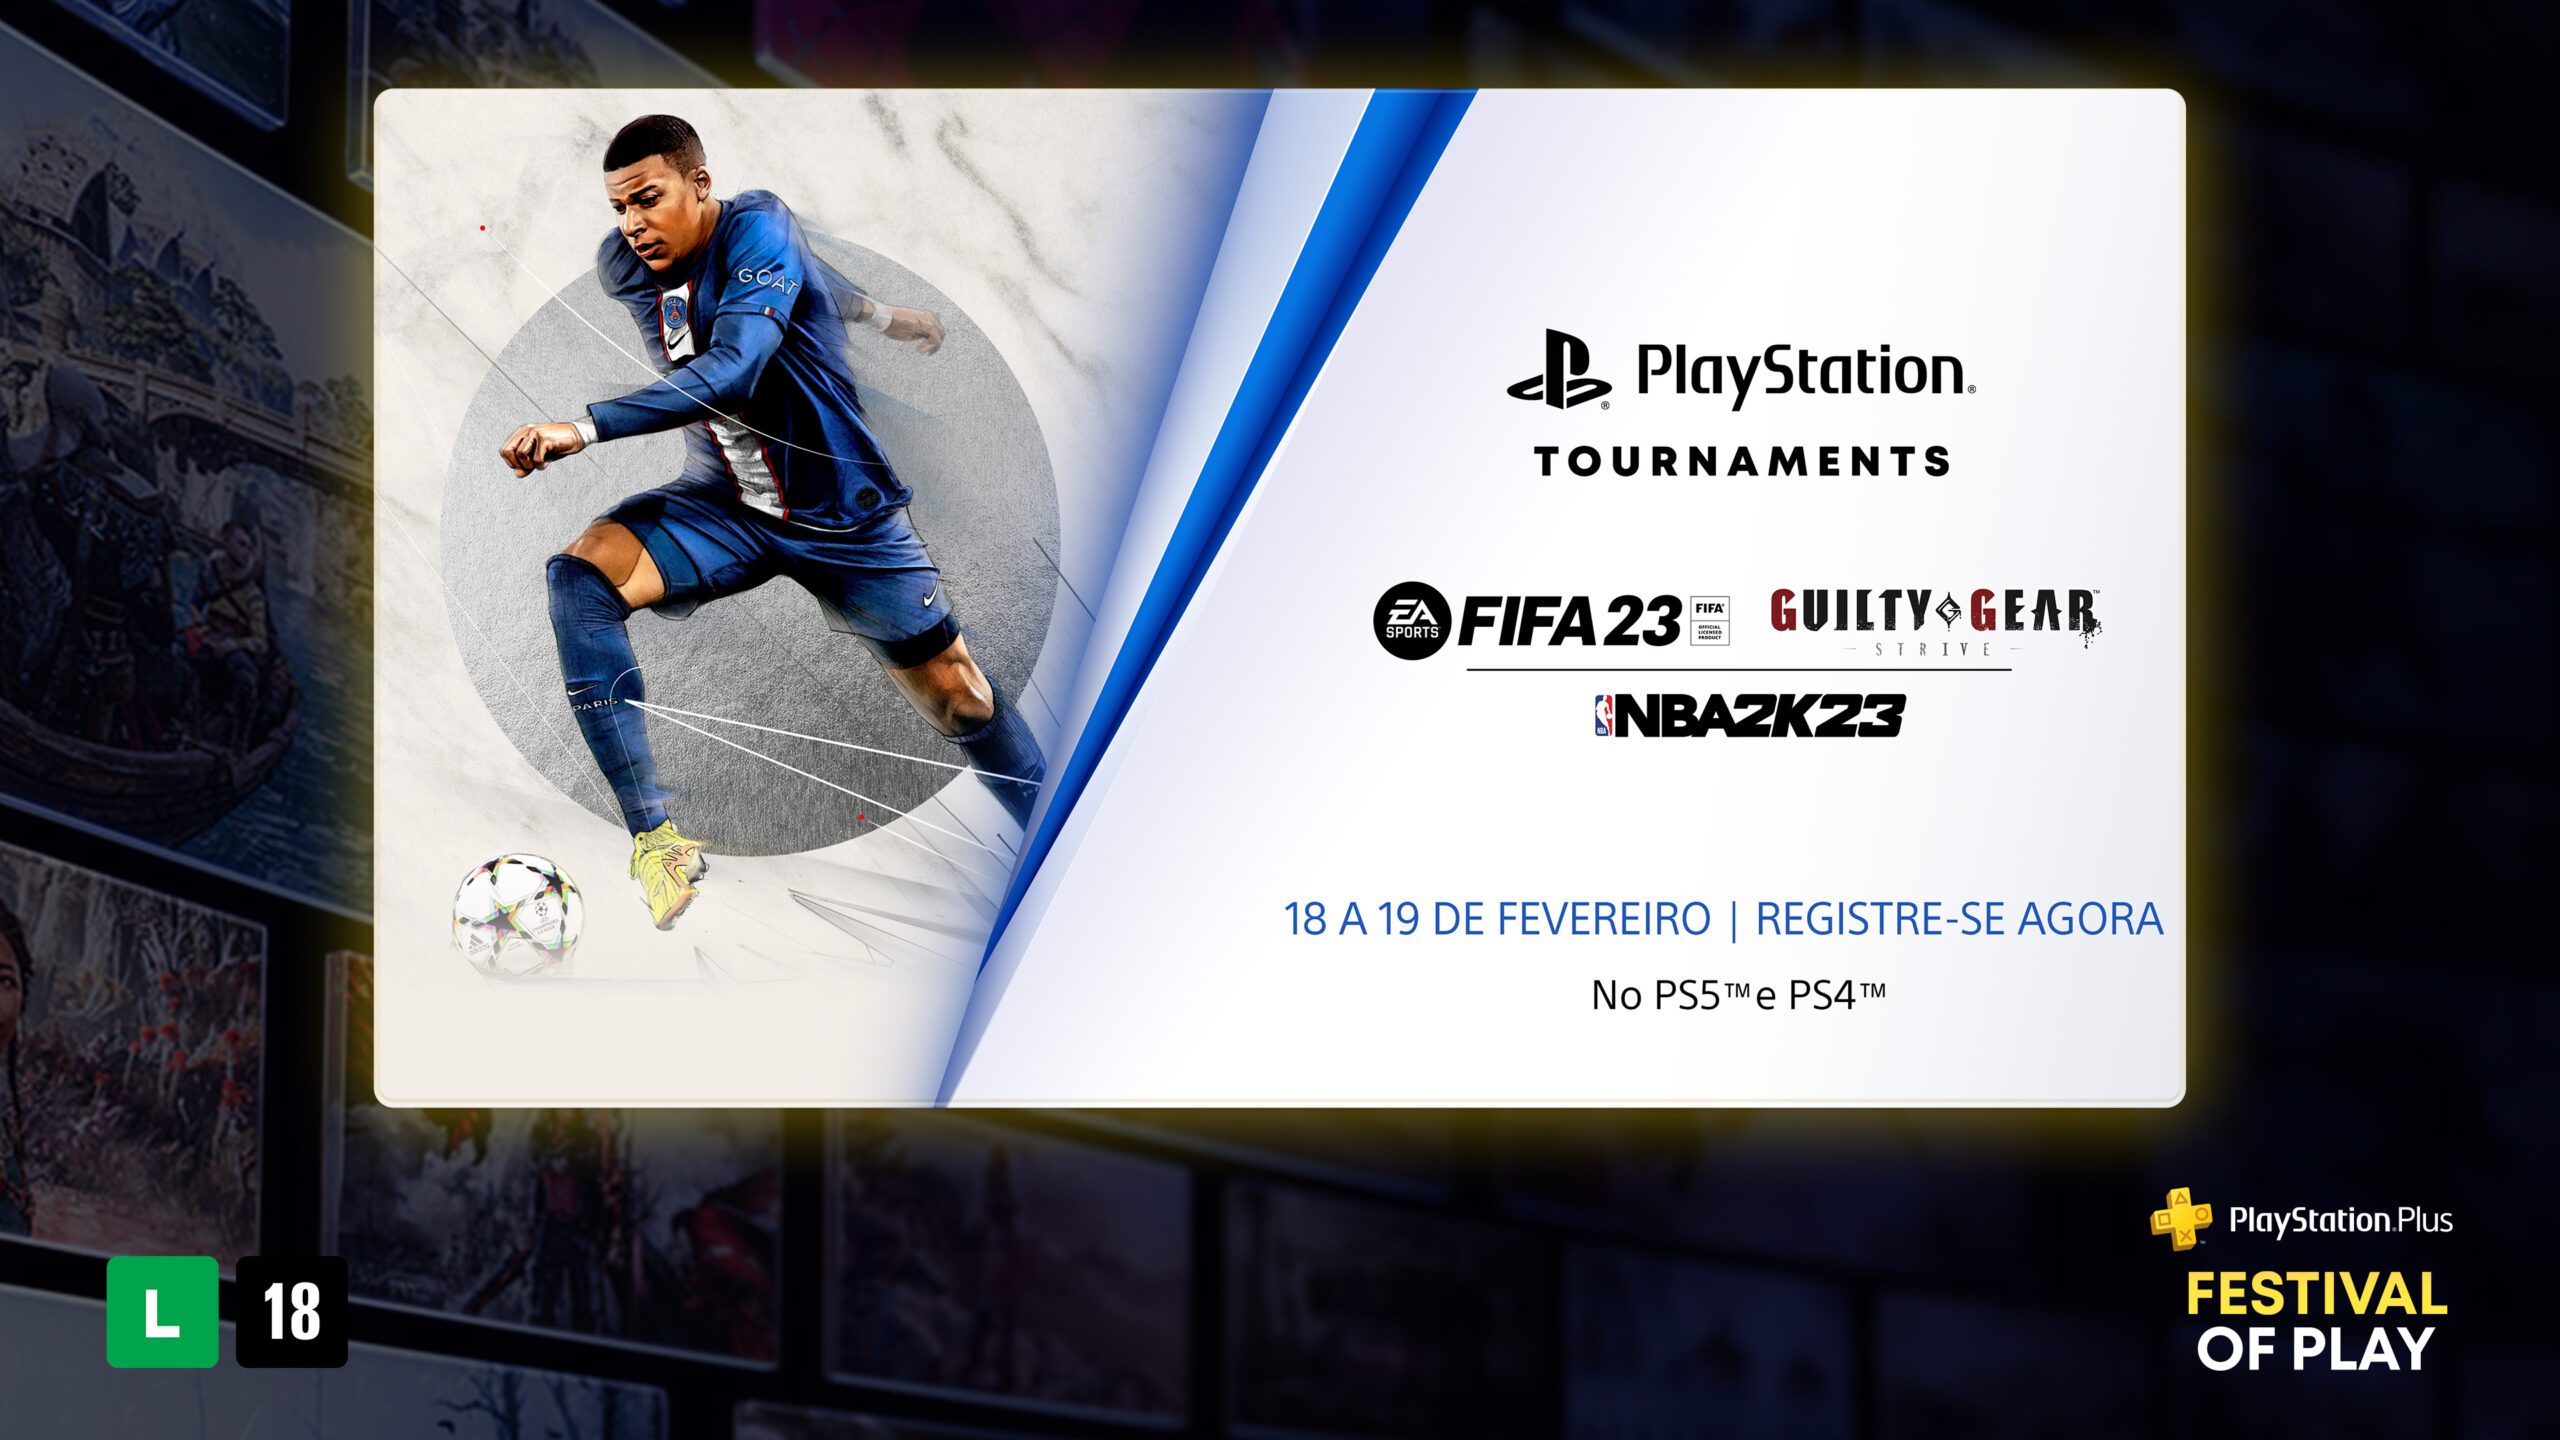 Junte-se a nós para o Festival dos Jogos PlayStation Plus